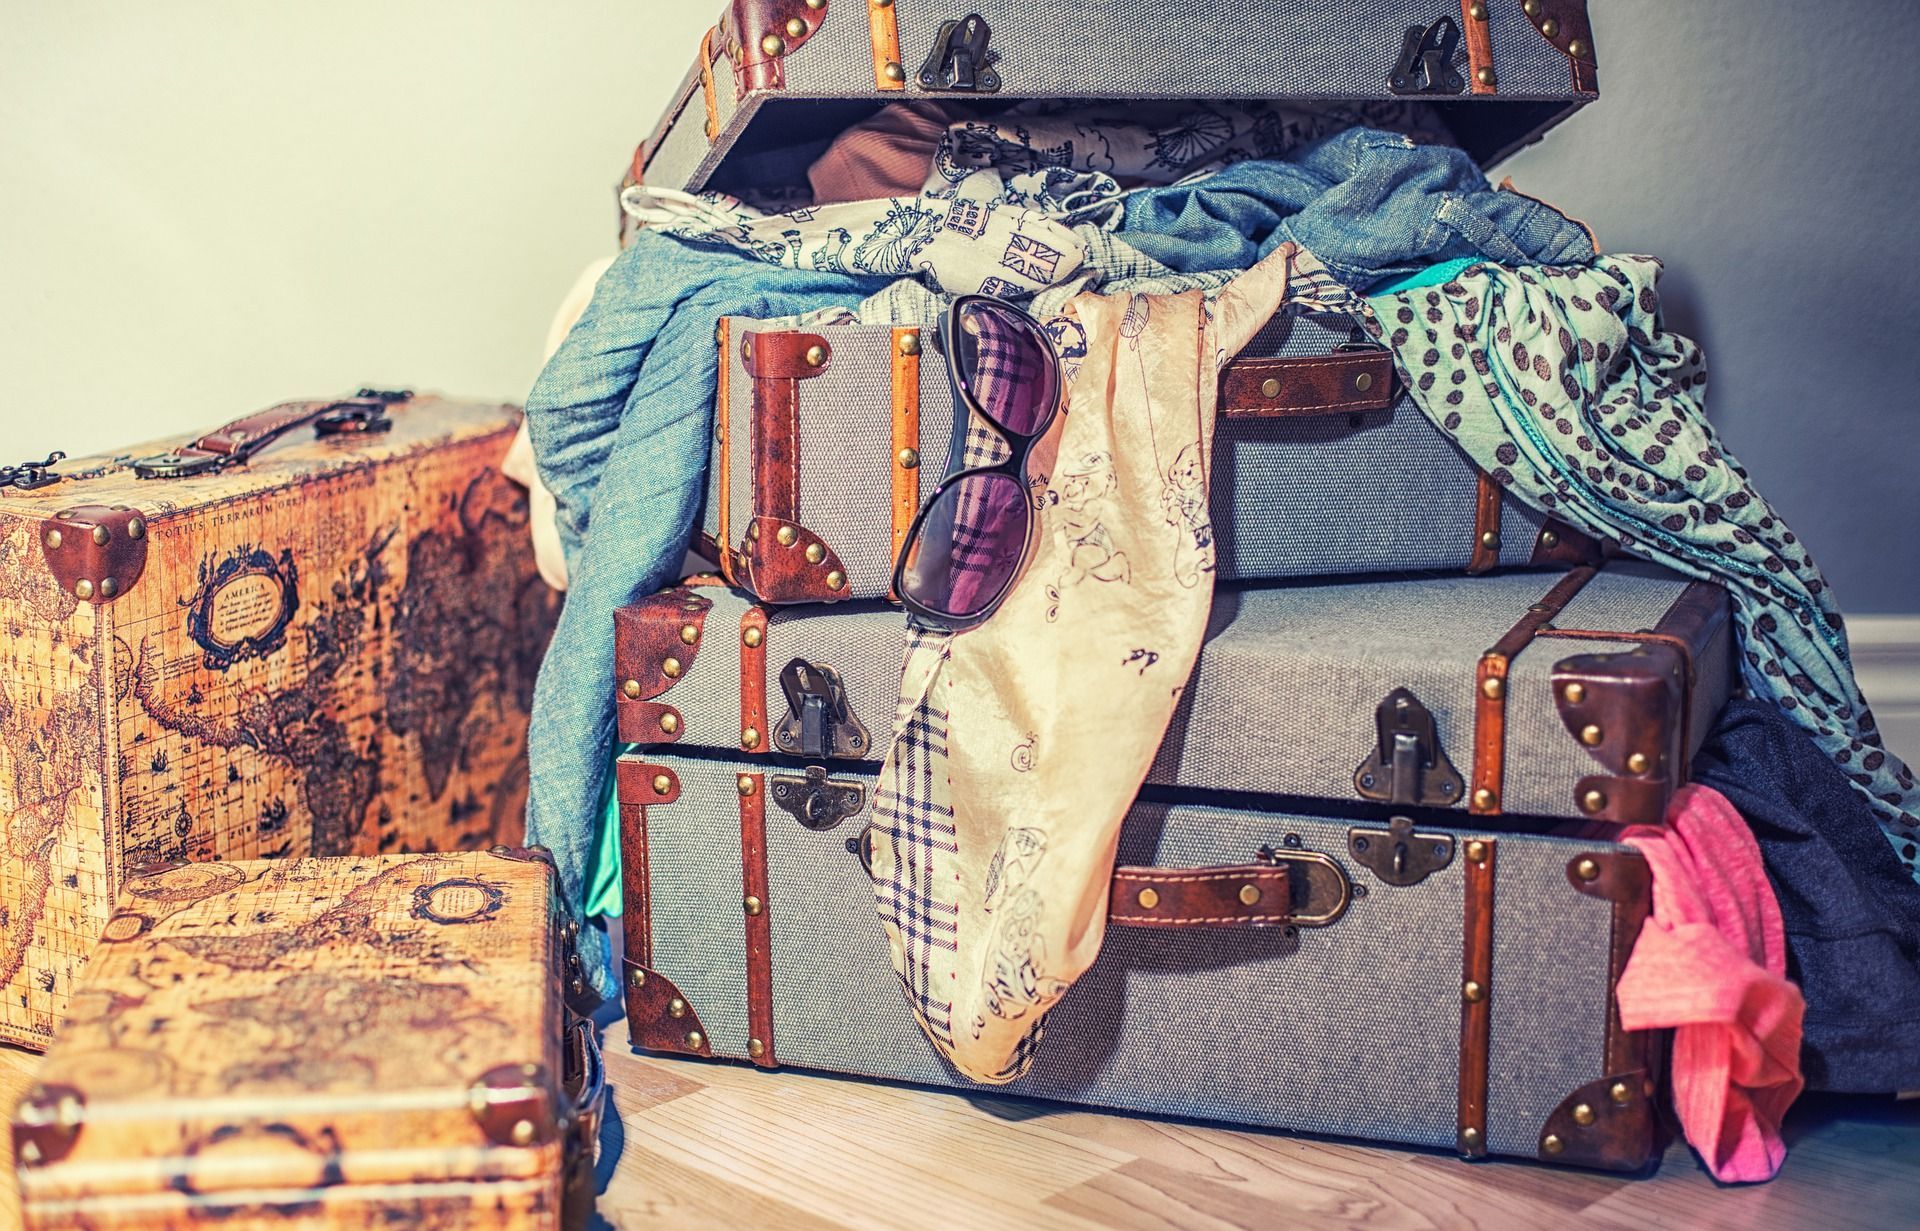 Що взяти з собою на зимовий відпочинок: складаємо валізу разом
